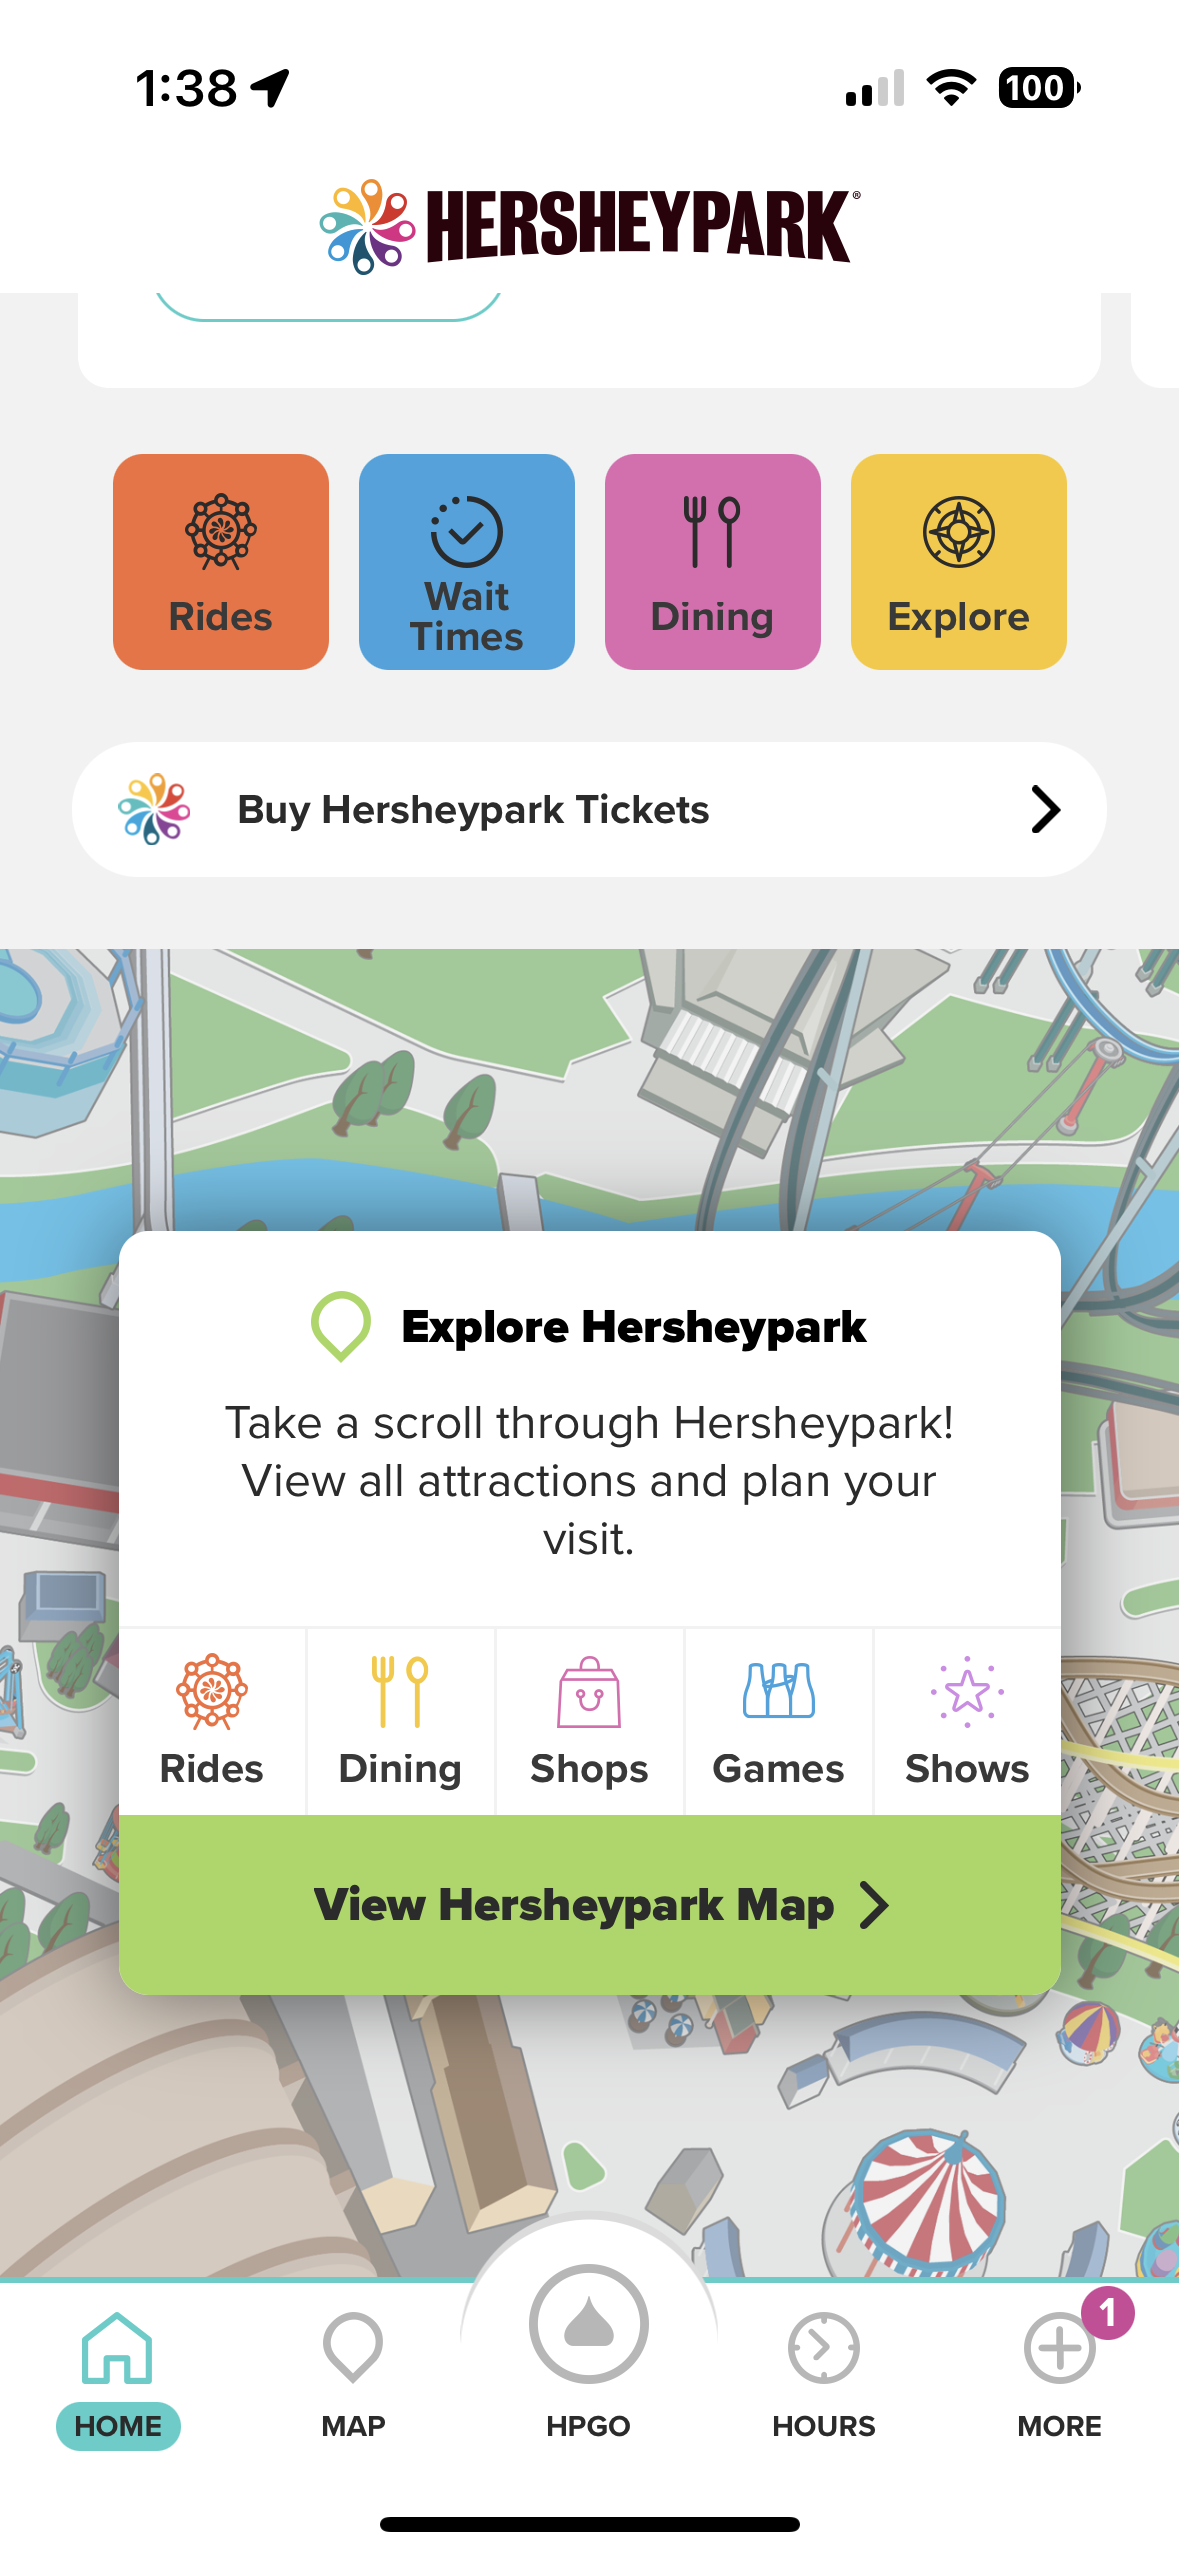 Hersheypark App Homepage